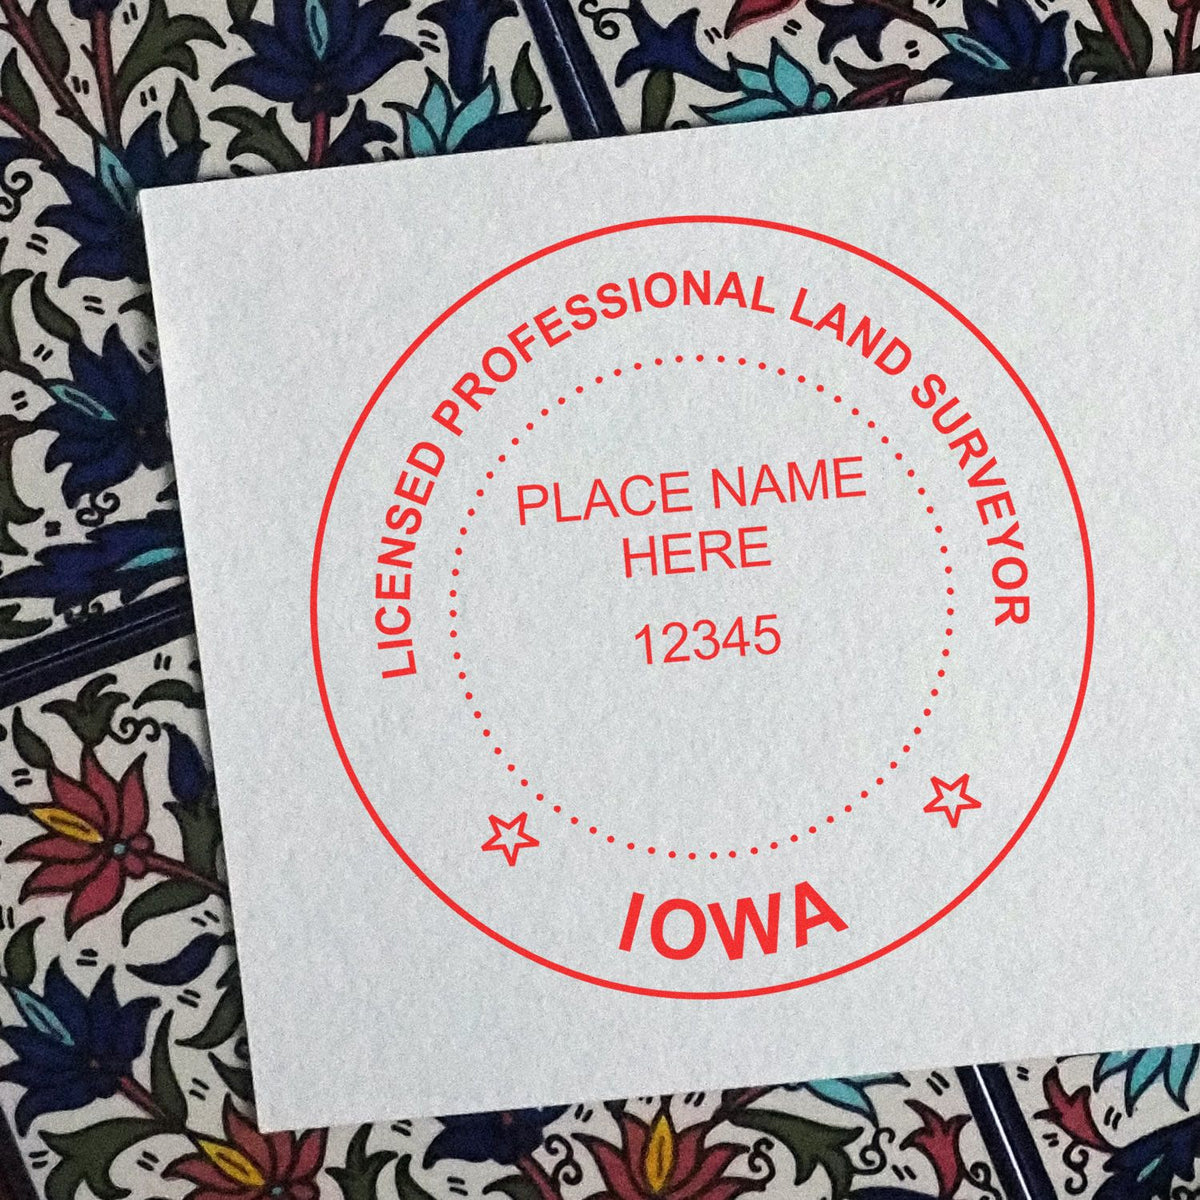 Iowa Land Surveyor Seal Stamp In Use Photo